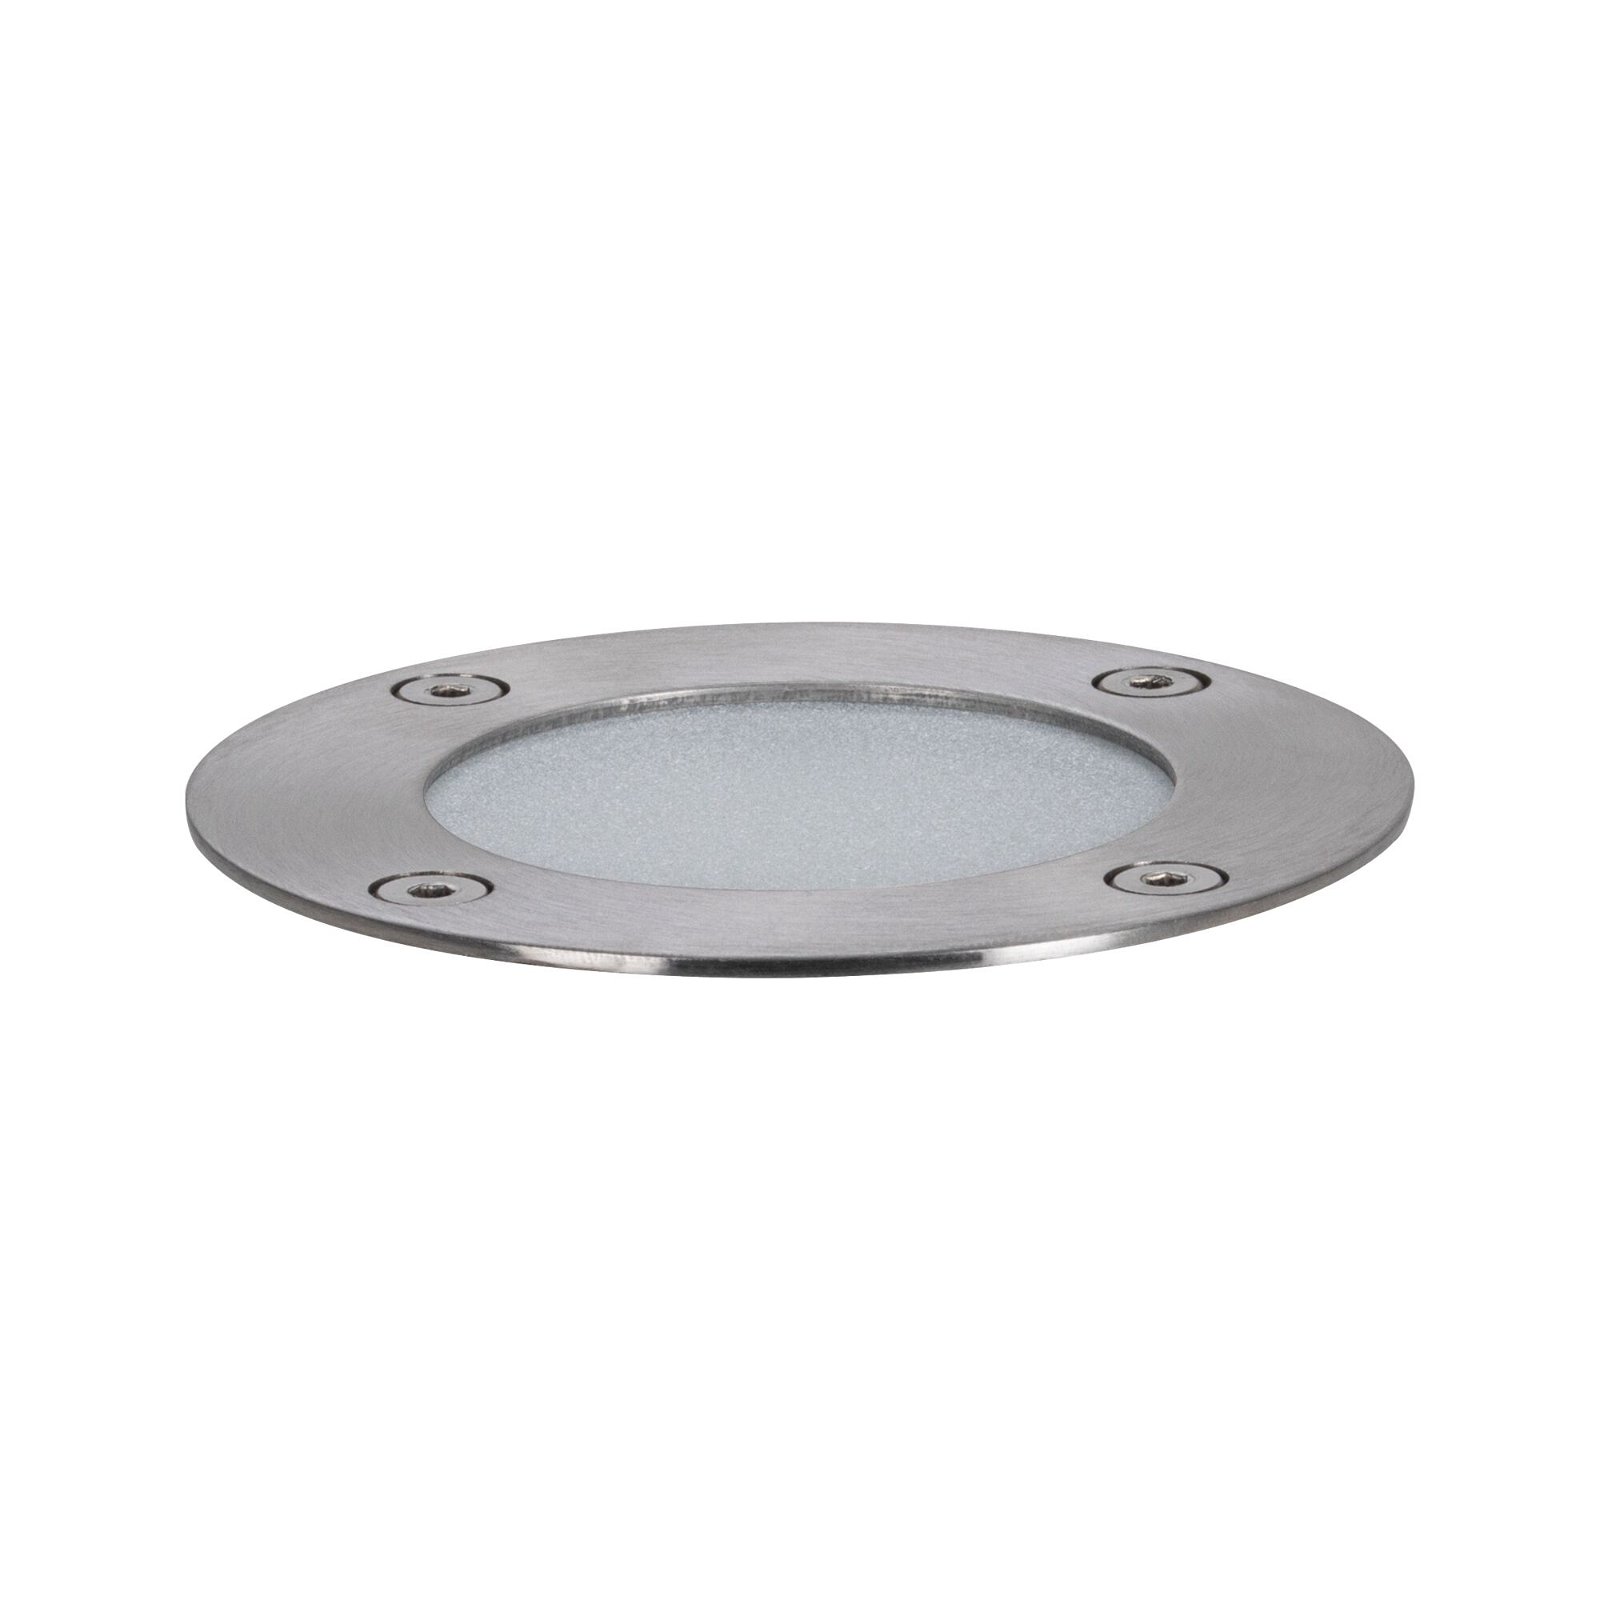 Plug & Shine Encastré de sol LED Floor Luminaire individuel favorable aux insectes IP67 2200K 4,5W Anthracite